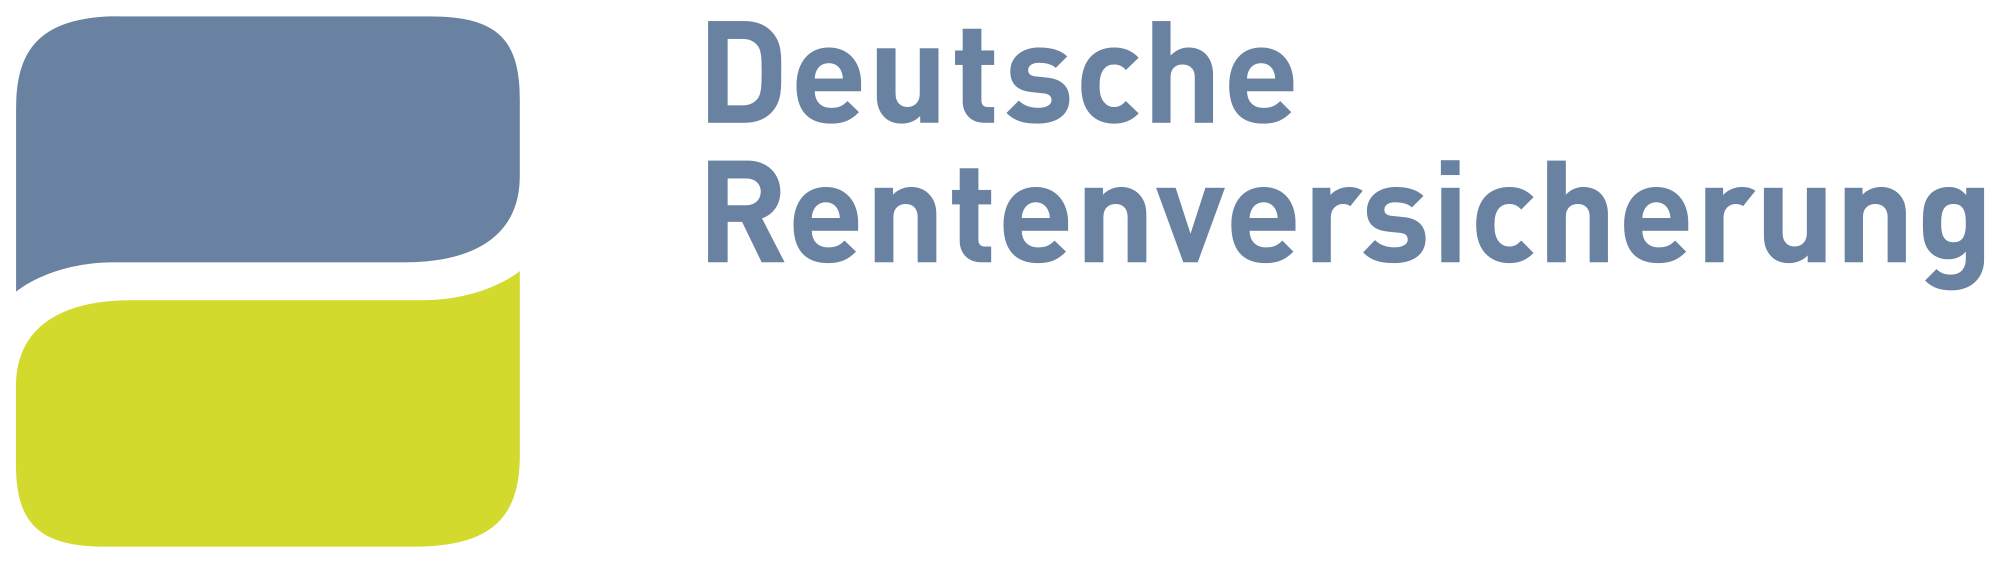 2000px-Deutsche_Rentenversicherung_logo.svg